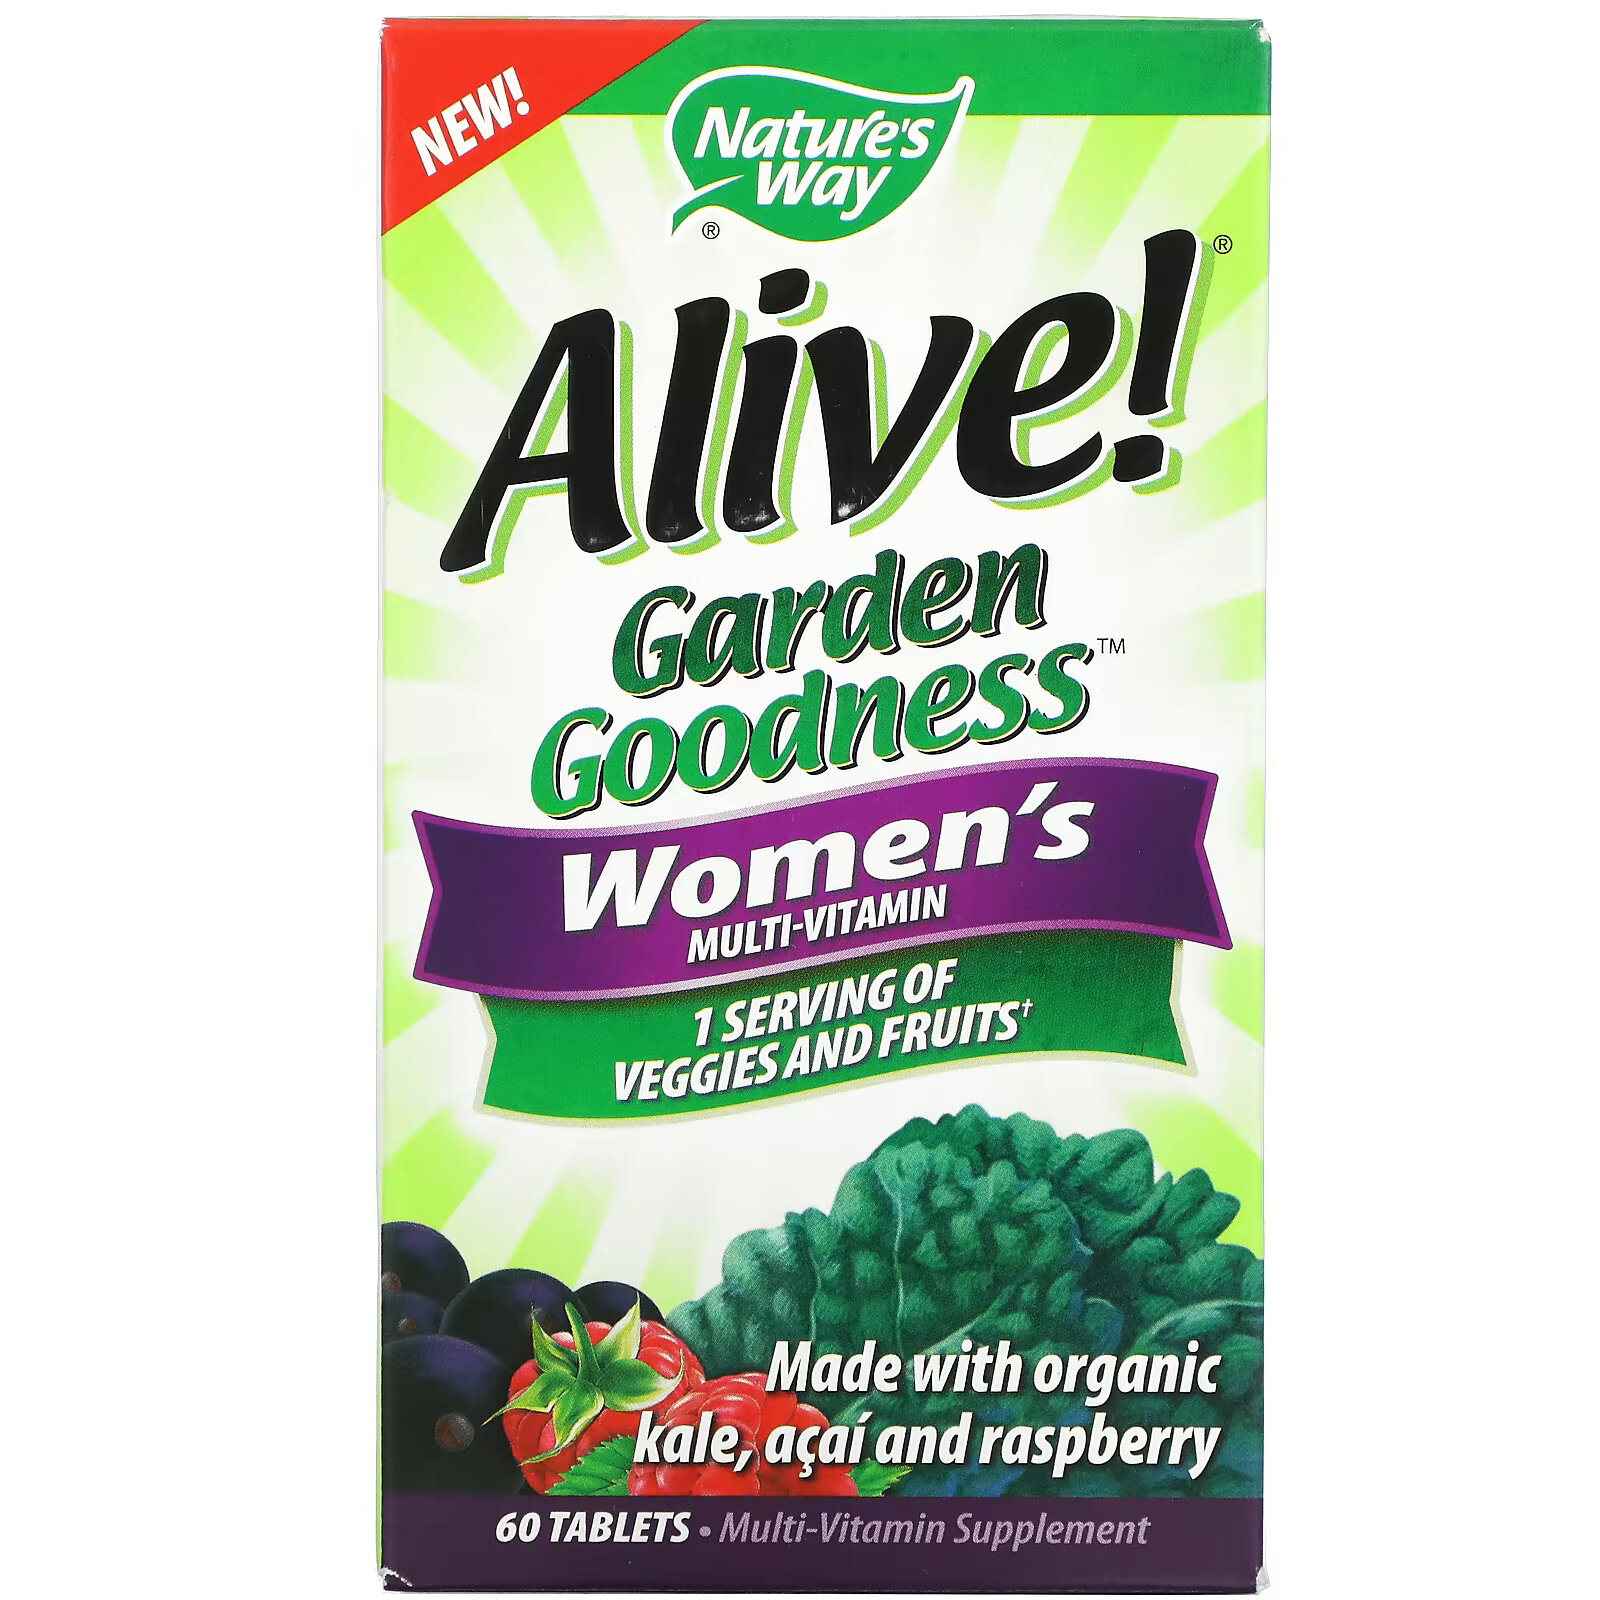 Мультивитамин Nature's Way Alive! Garden Goodness для женщин, 60 таблеток nature s way alive garden goodness мультивитамин для женщин 60 таблеток